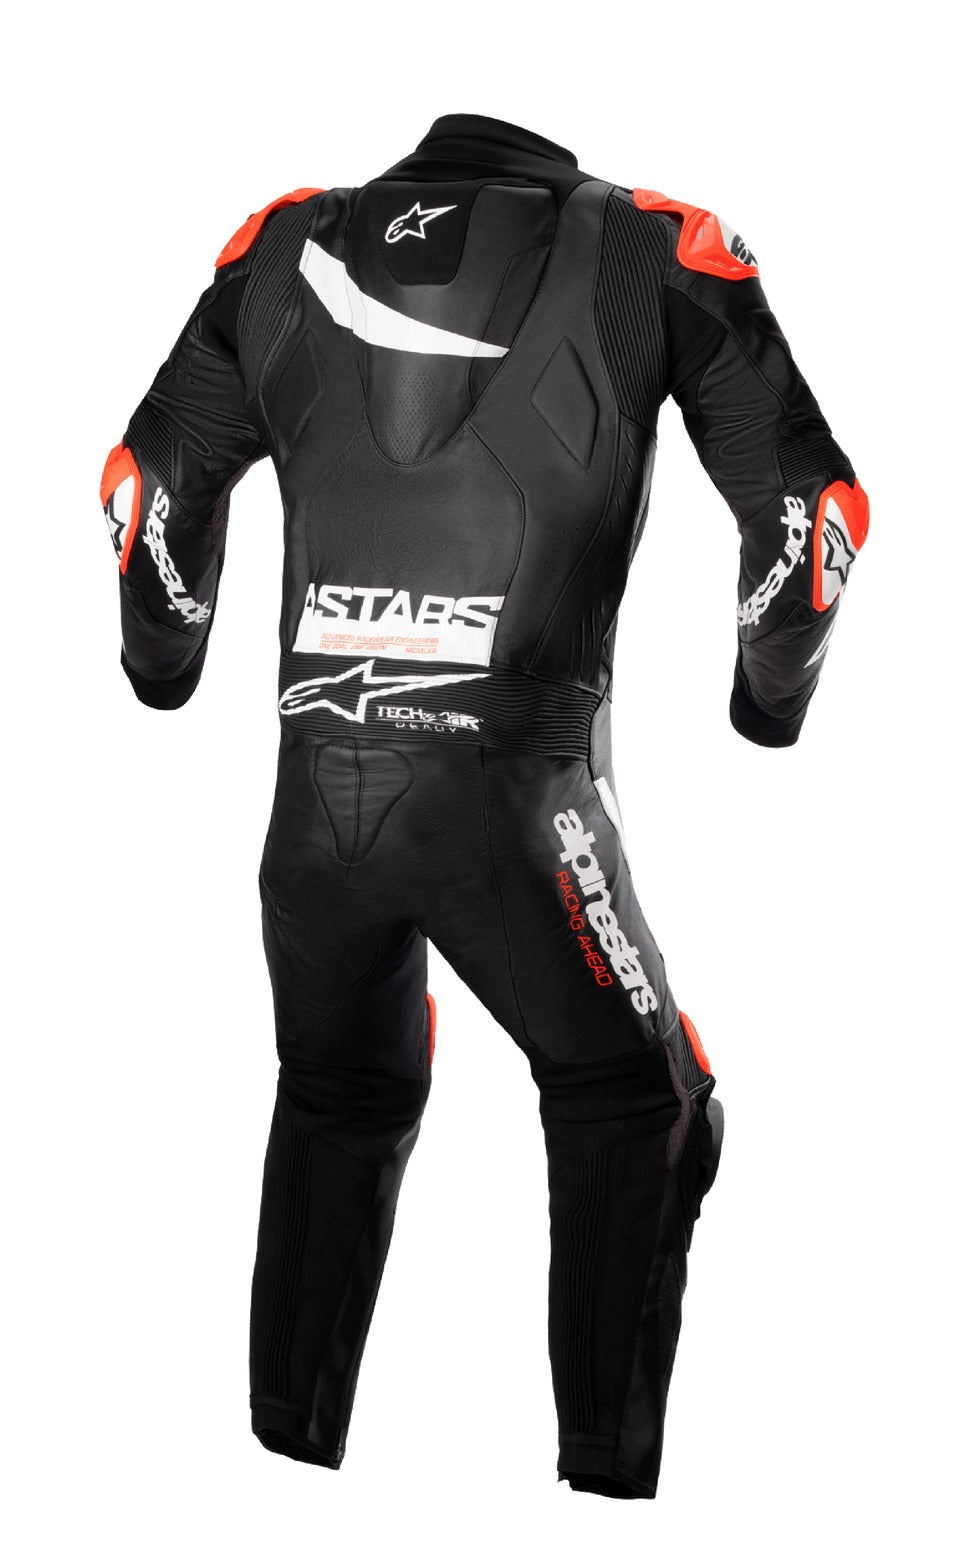 Alpinestars GP Plus V4 Motorcycle Racing Suit - ZEES MOTO